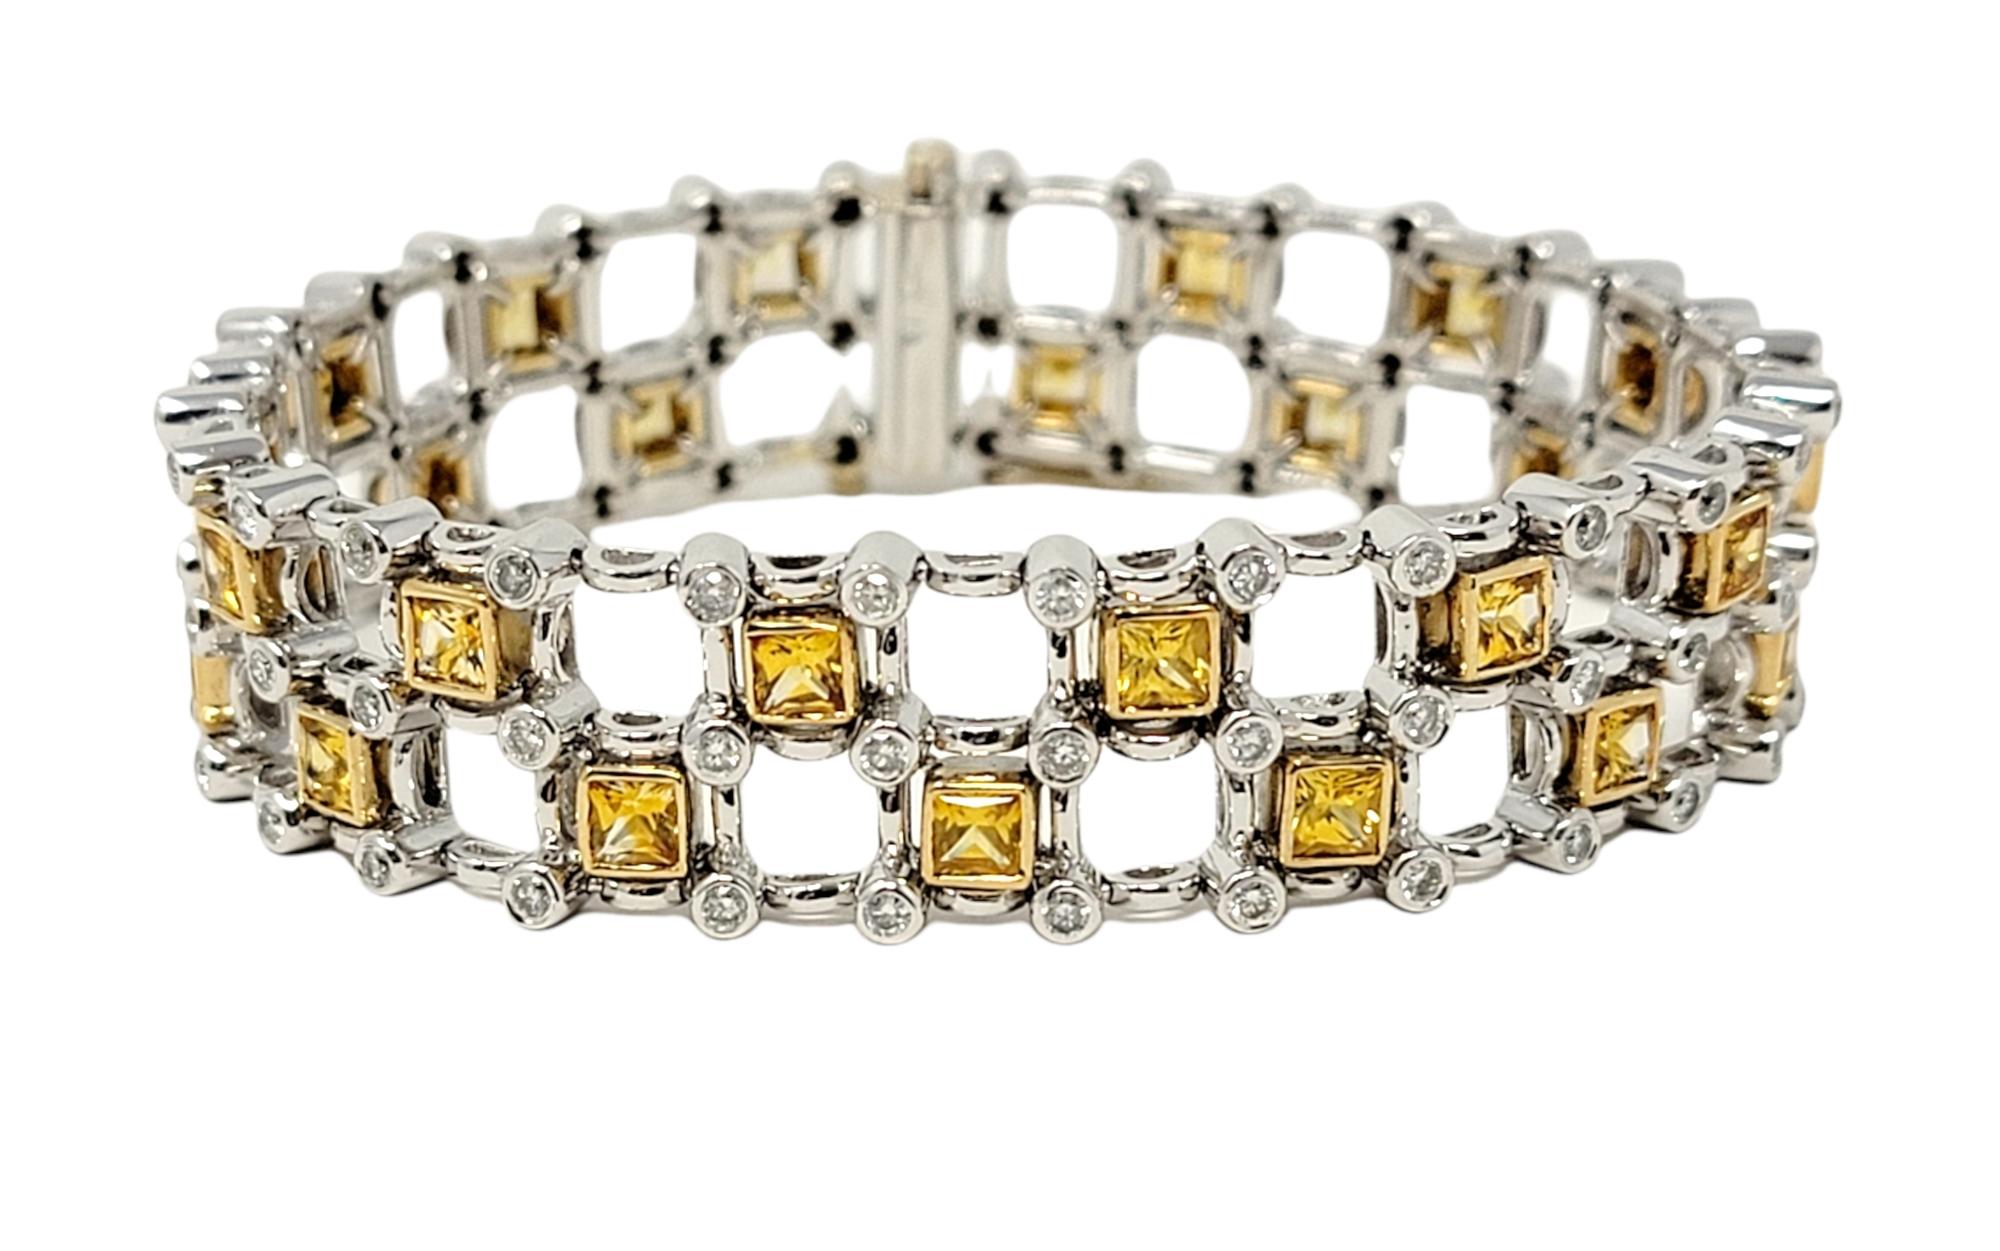 Dieses wunderschöne, zeitgenössische Gliederarmband mit Diamanten und Saphiren umgibt Ihr Handgelenk mit modernem Luxus.  Dieses farbenfrohe und funkelnde Schmuckstück zeichnet sich durch quadratische gelbe Saphirsteine aus, die in einem